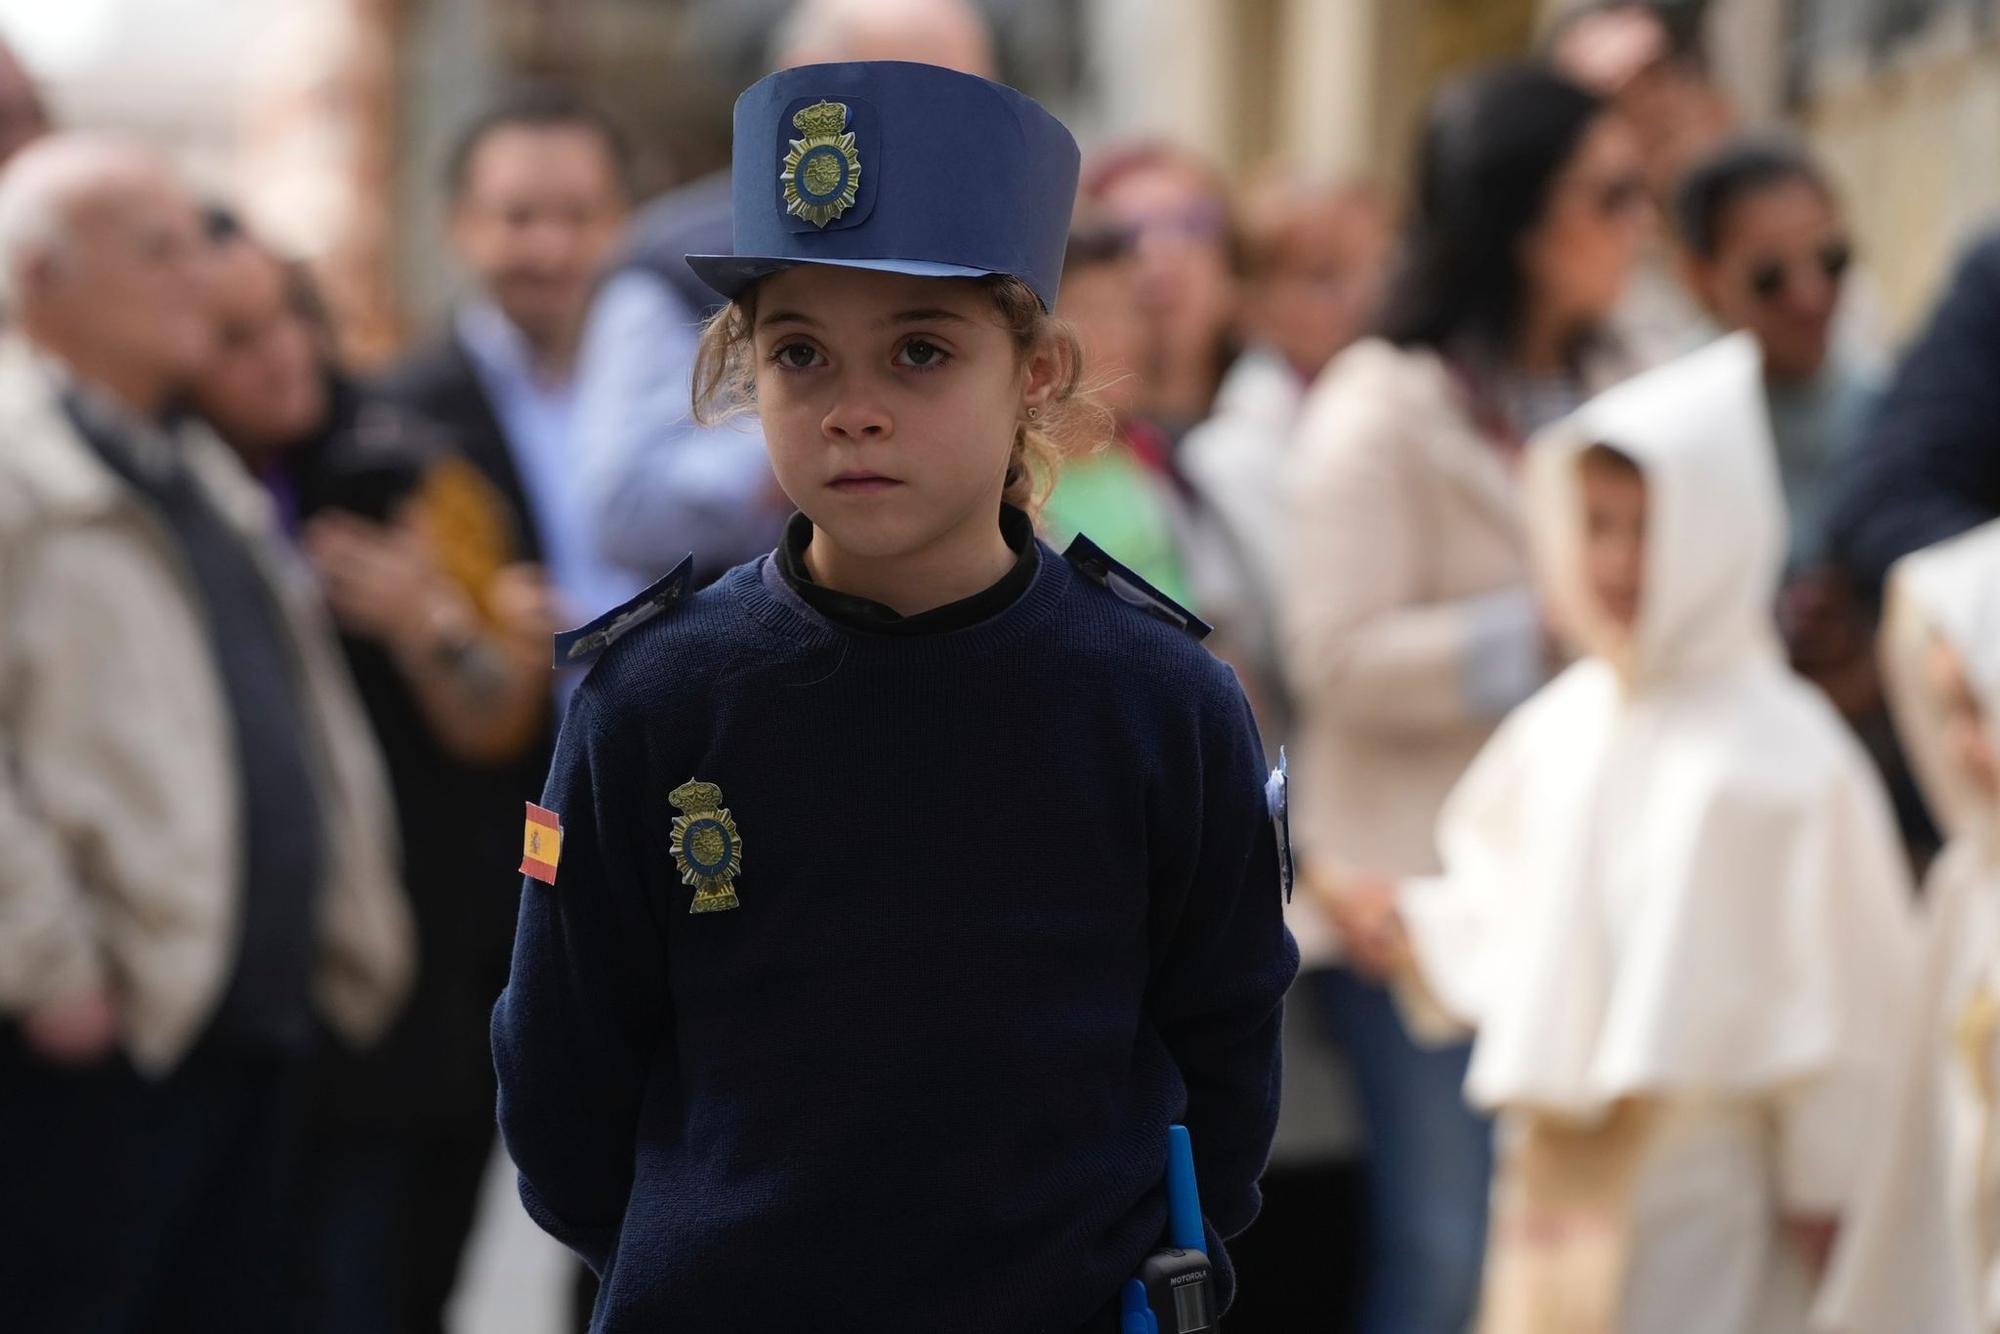 GALERÍA | Las mejores imágenes de los niños de La Milagrosa de Zamora